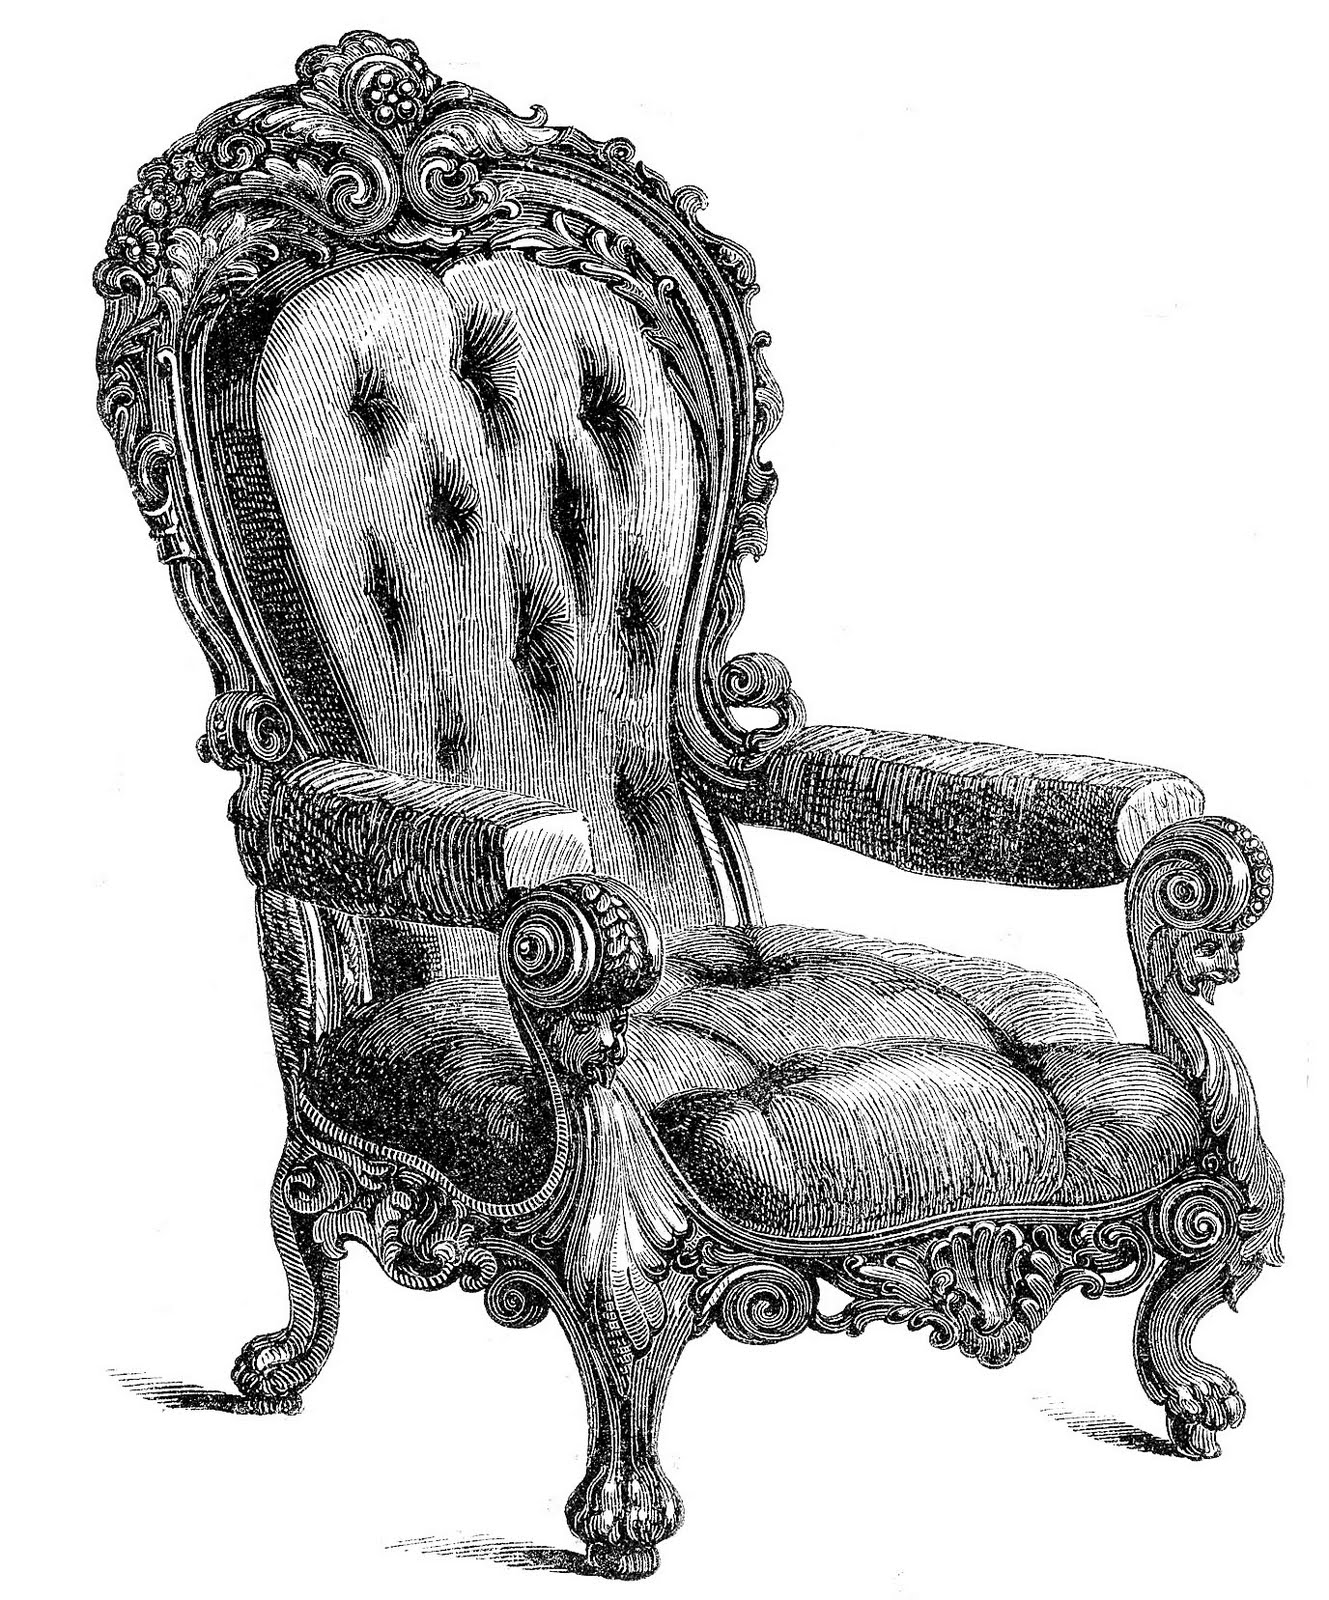 chair clipart vintage chair